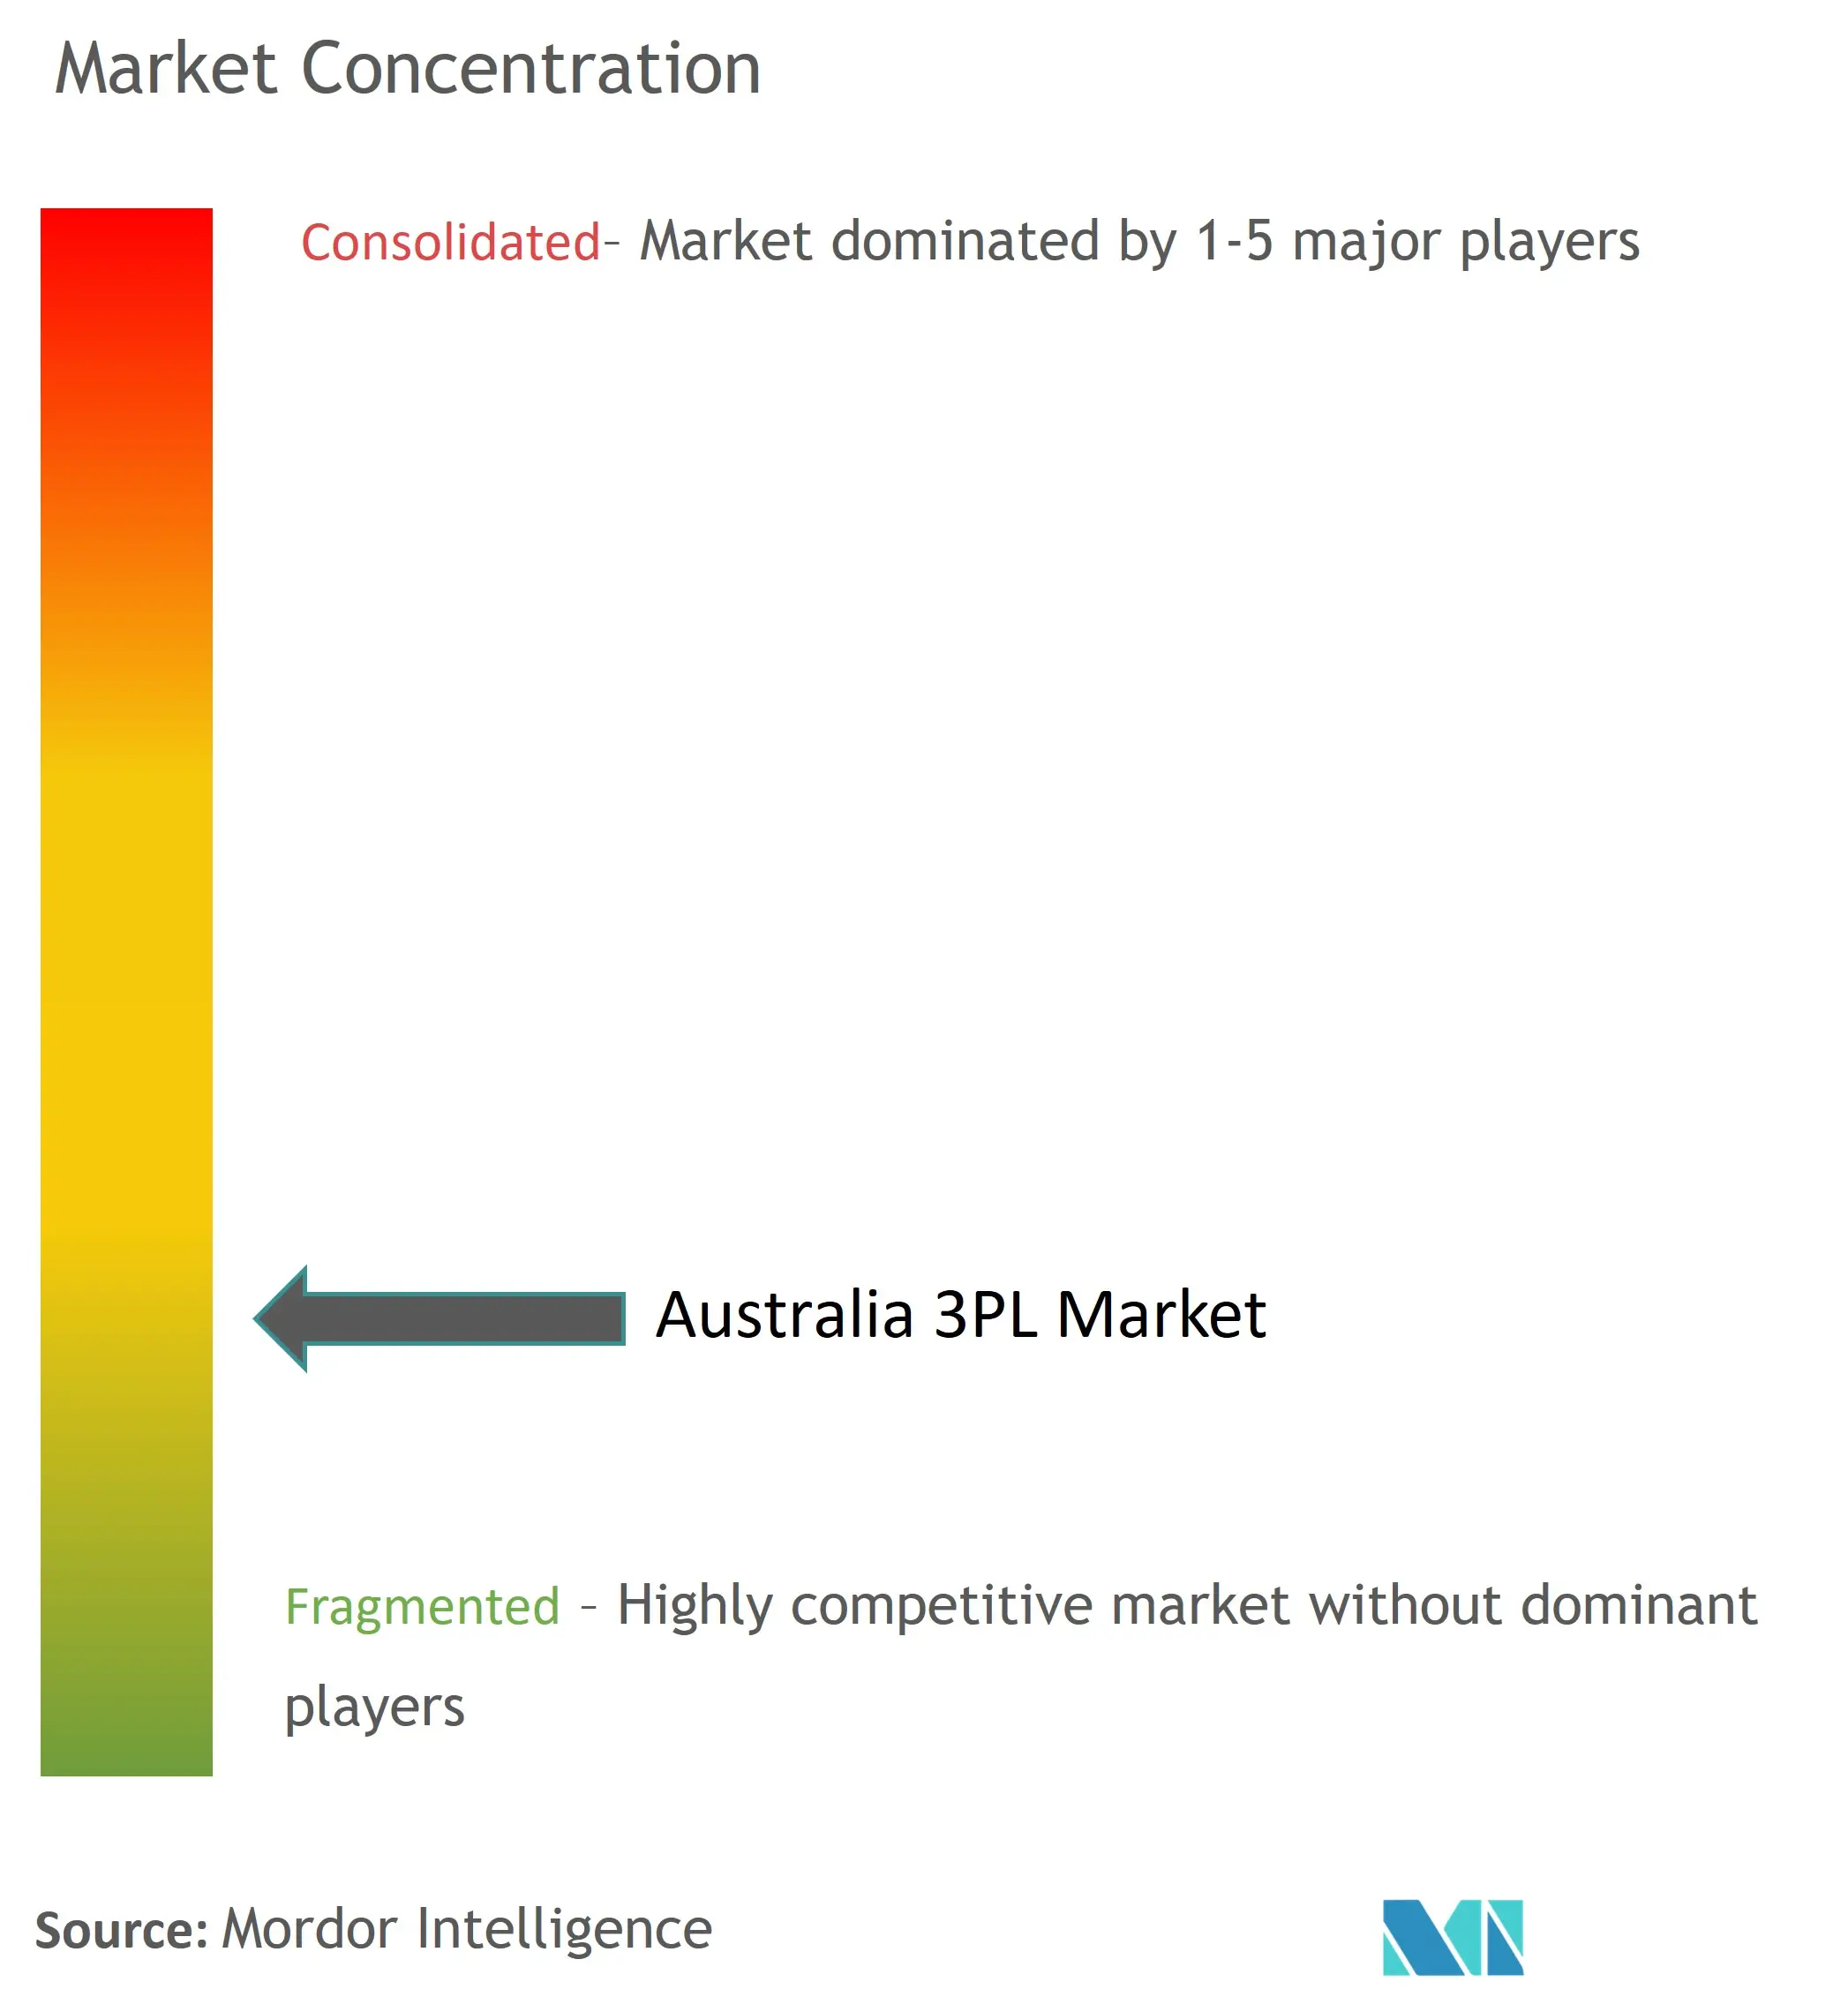 Australia 3PL Market Concentration